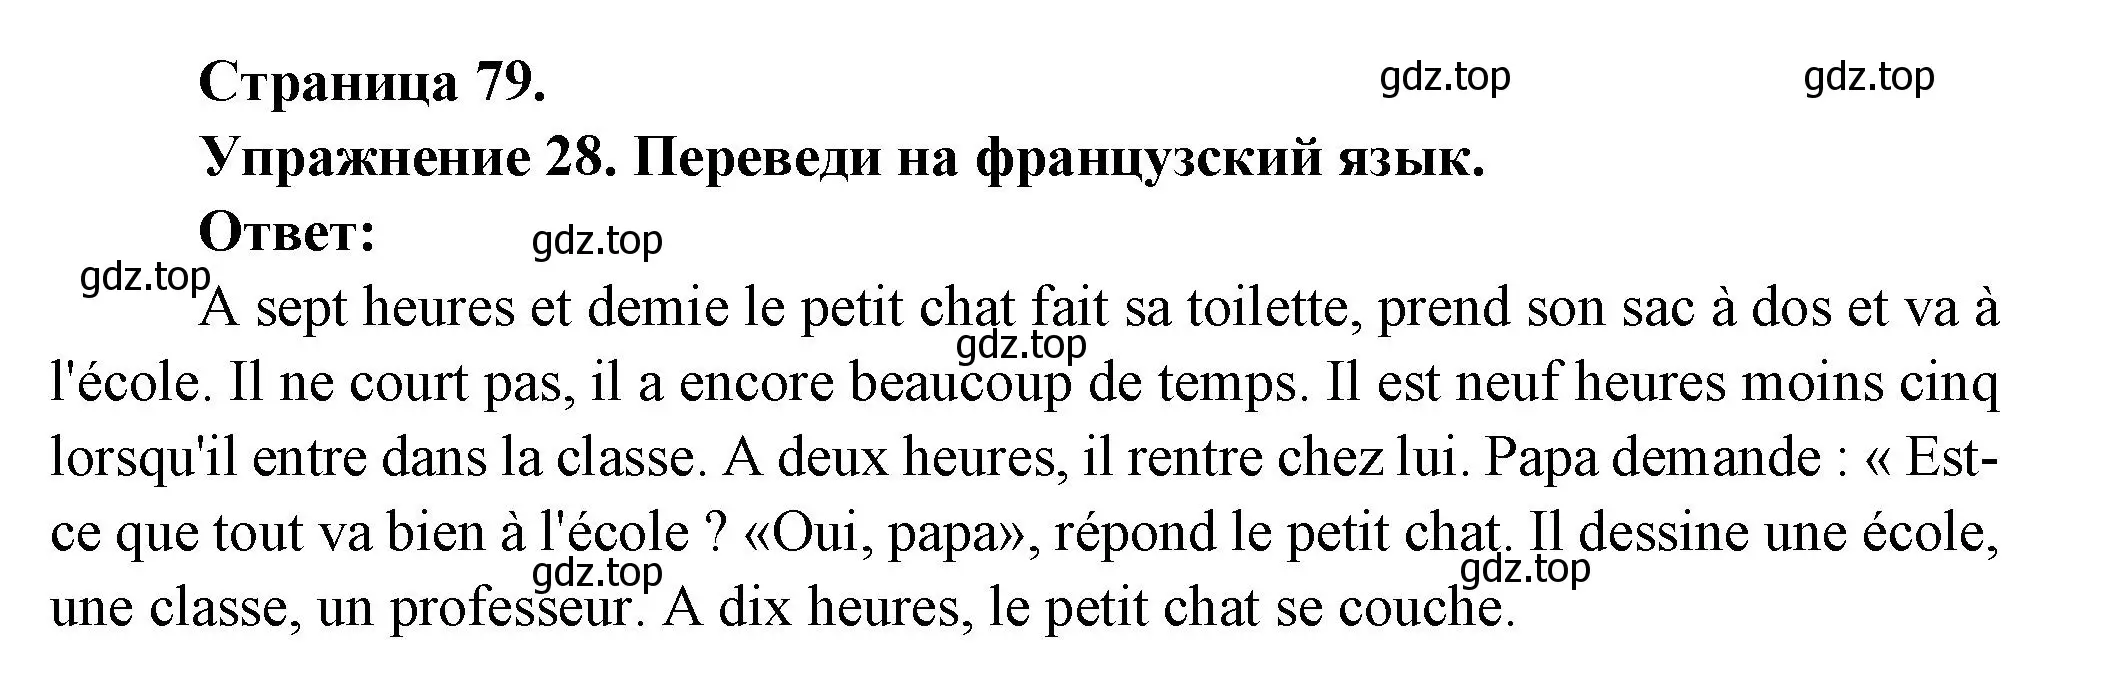 Решение номер 28 (страница 79) гдз по французскому языку 5 класс Береговская, Белосельская, учебник 1 часть